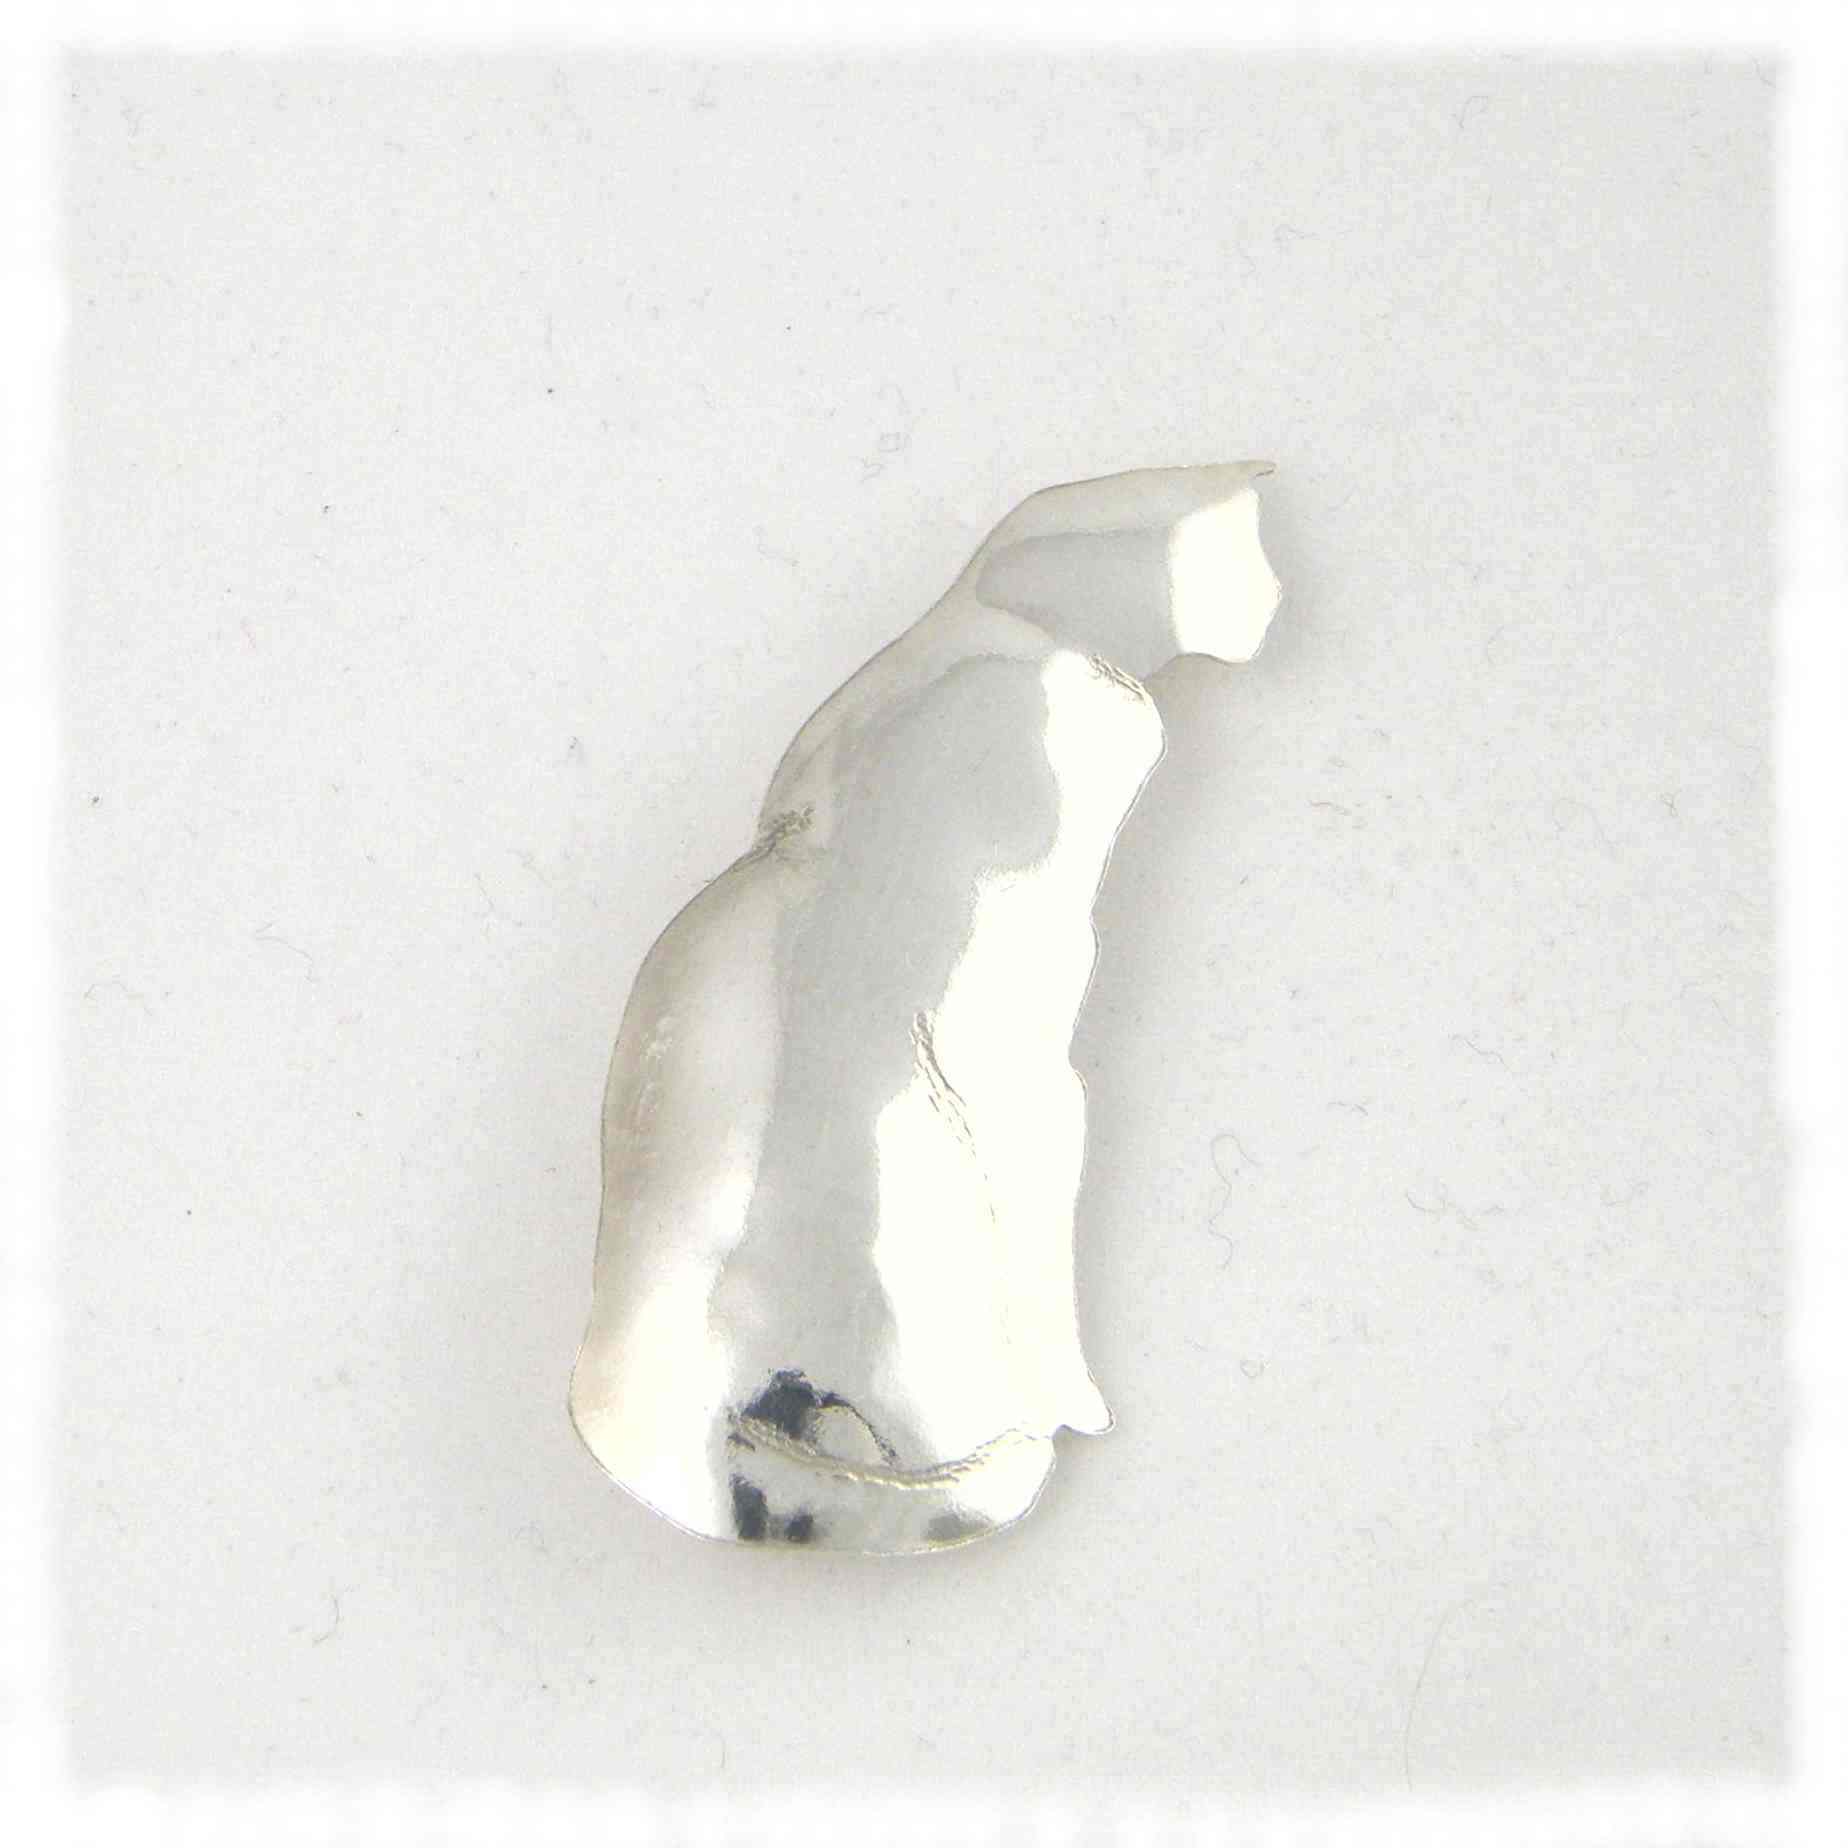 Silver plain cat brooch